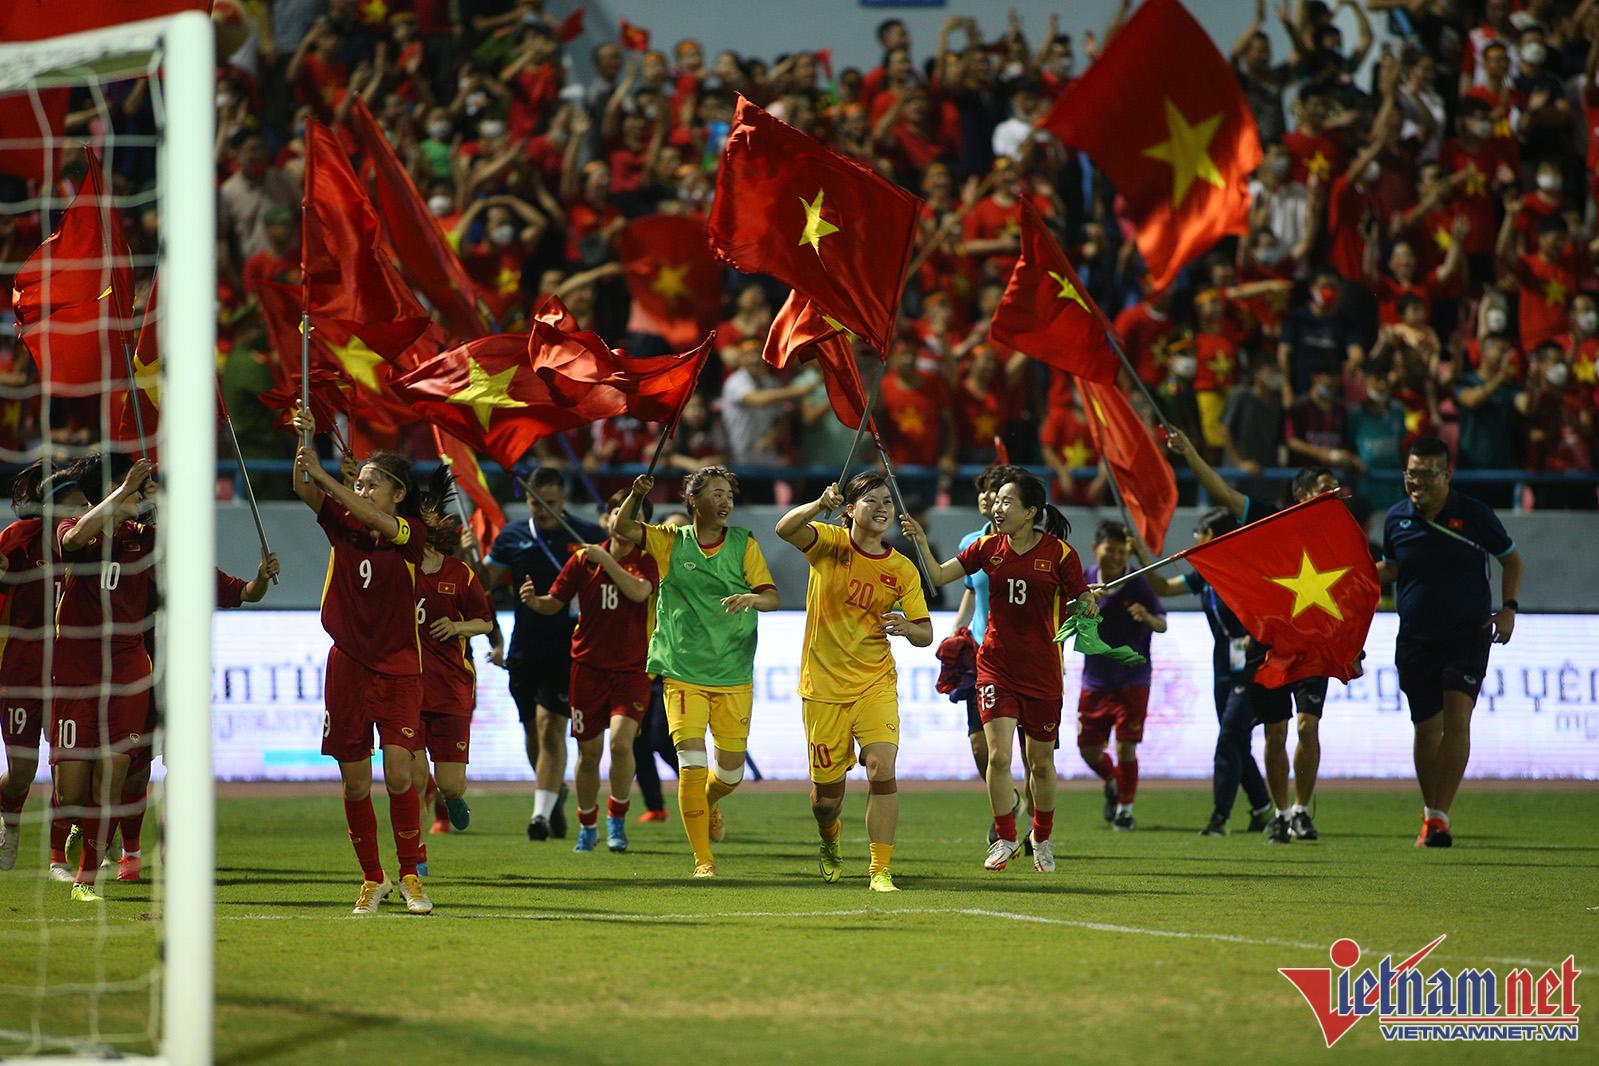 Đội tuyển bóng đá nữ Việt Nam: Đội tuyển bóng đá nữ Việt Nam đang trở thành niềm hy vọng lớn của bóng đá nước nhà. Với các cầu thủ tài năng, đầy nhiệt huyết và nỗ lực không ngừng, đội tuyển đã cống hiến cho các fan bóng đá nhiều kỳ tích đáng nhớ. Để cổ vũ cho đội tuyển, hãy xem hình ảnh liên quan để cùng trải nghiệm cảm xúc và niềm tin chung.